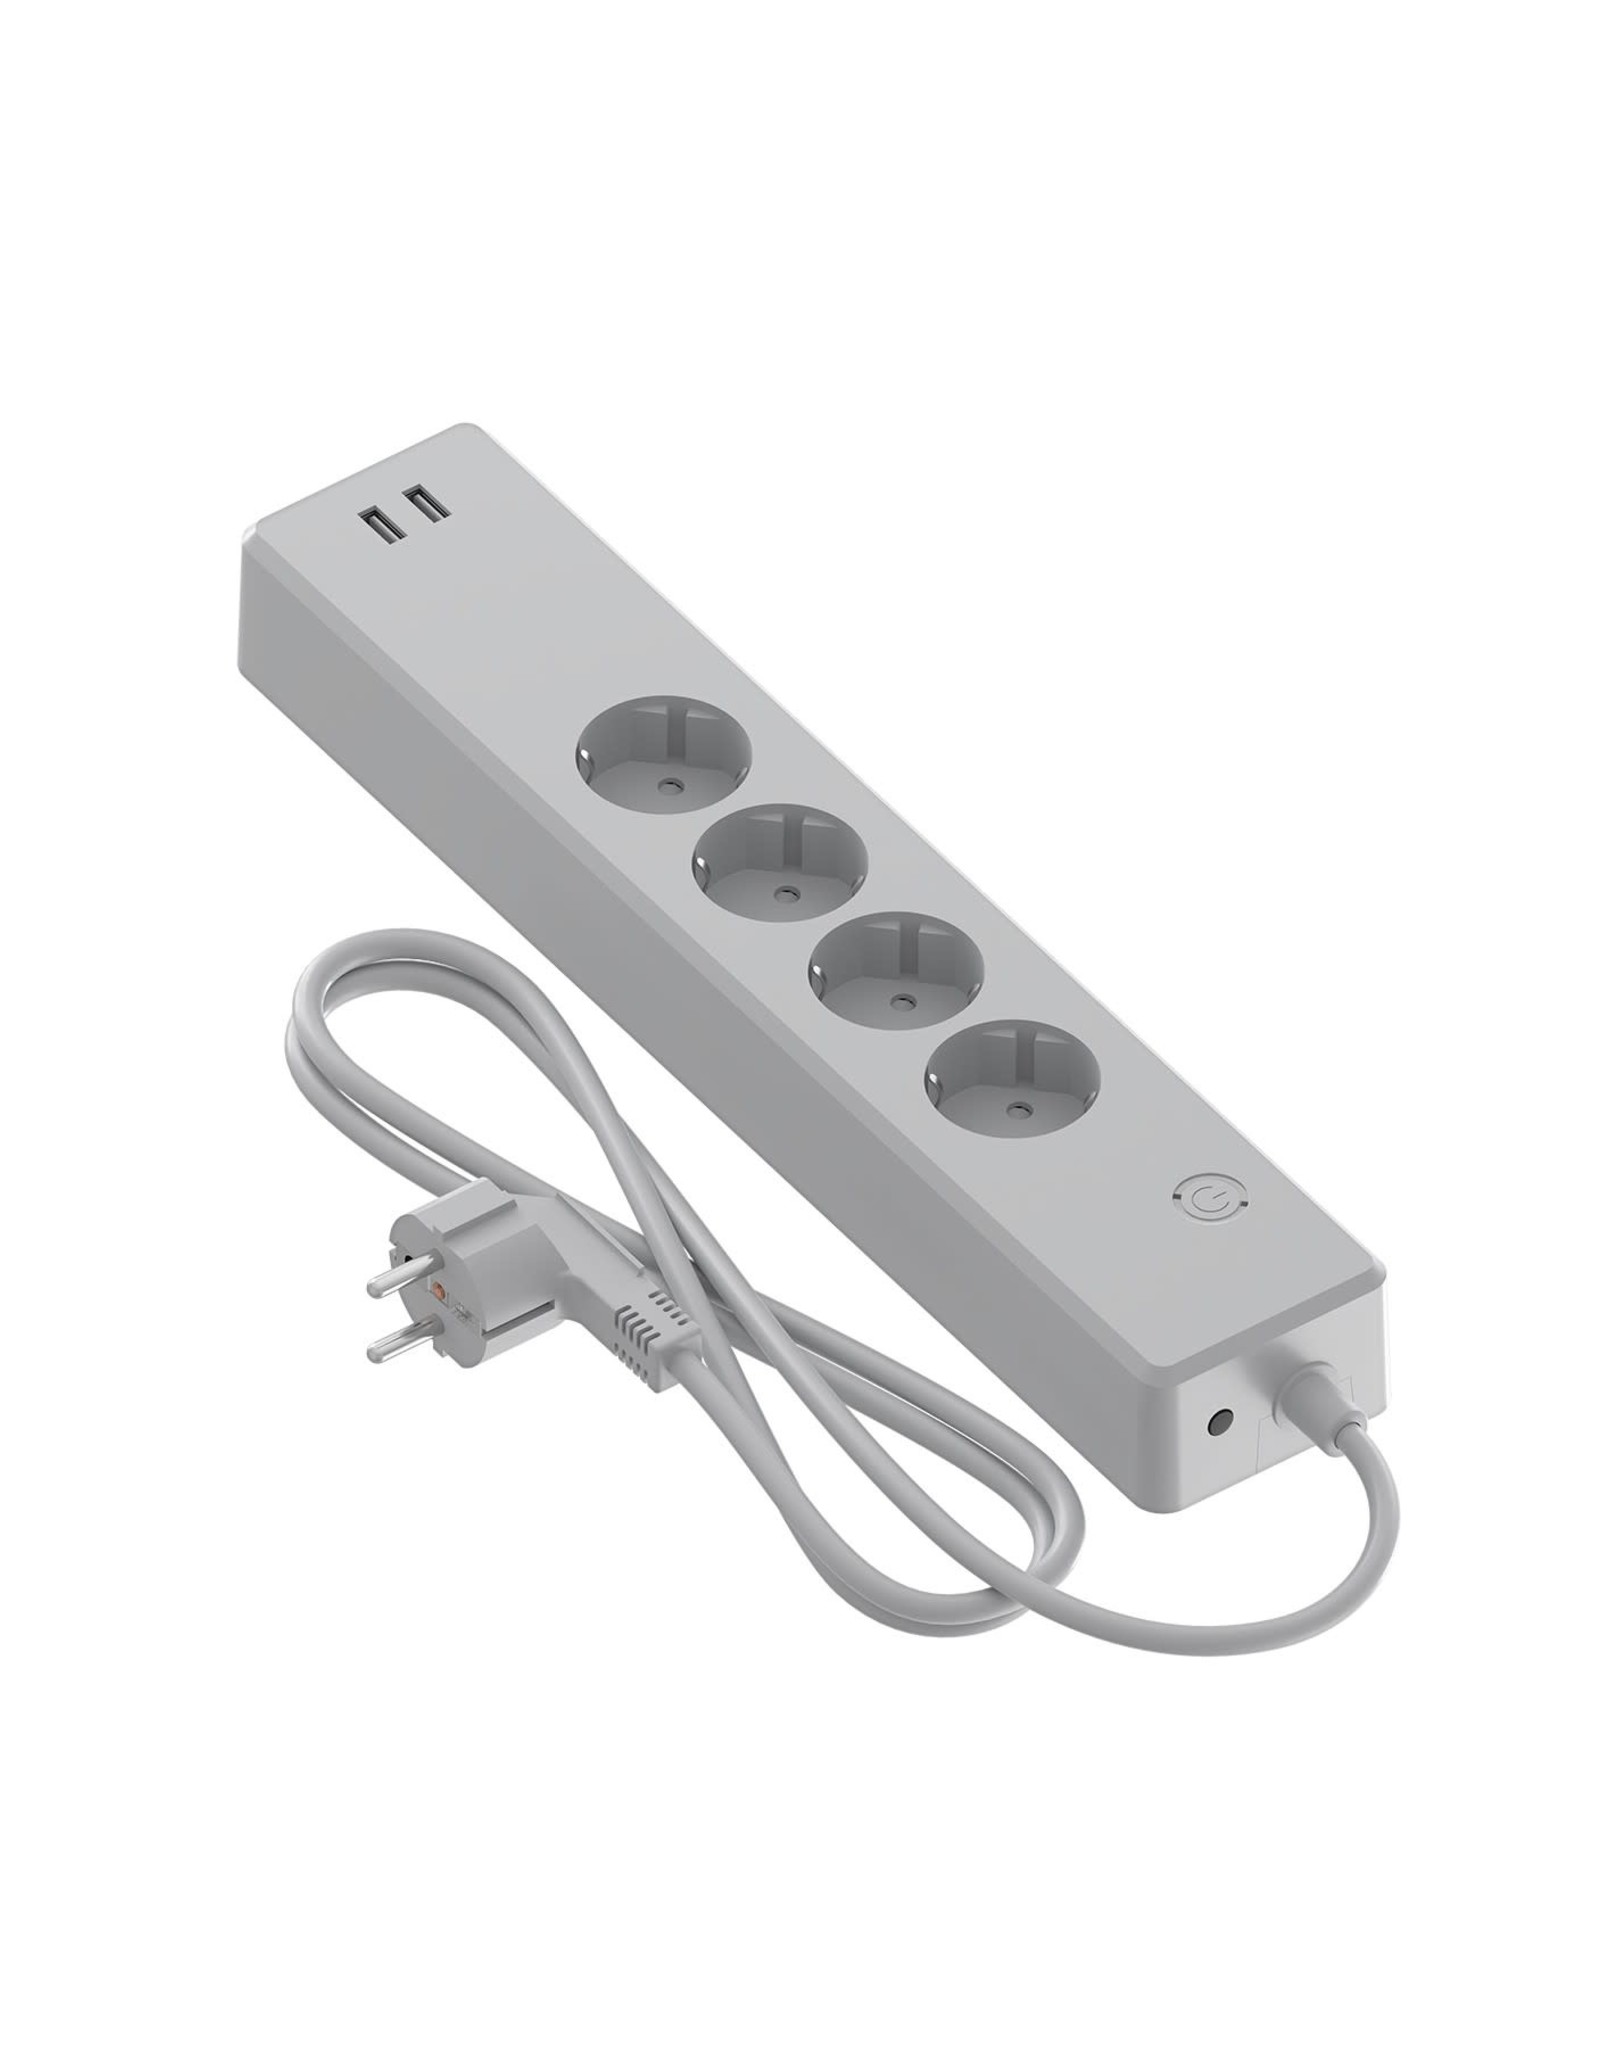 Calex Calex Smart tafelcontactdoos 4-voudig RA NL + 2 USB